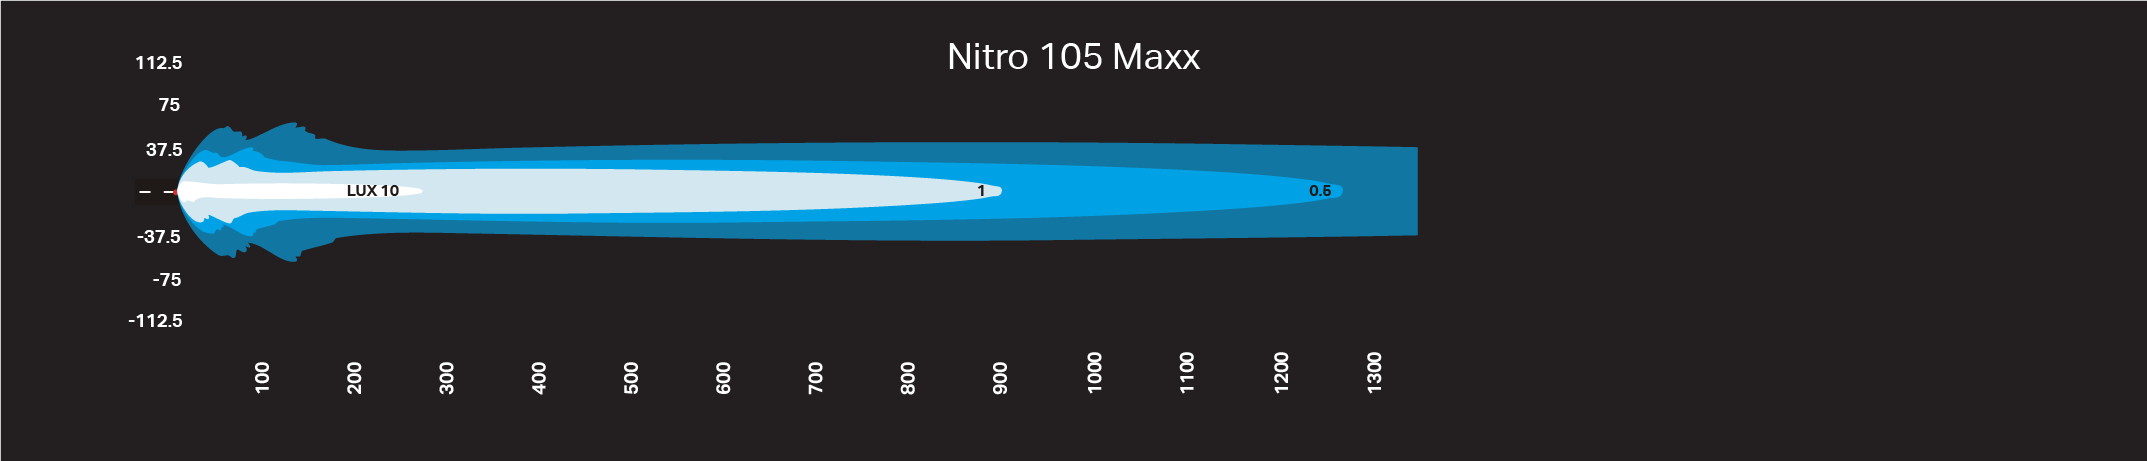 NITRO Maxx LED Light bar